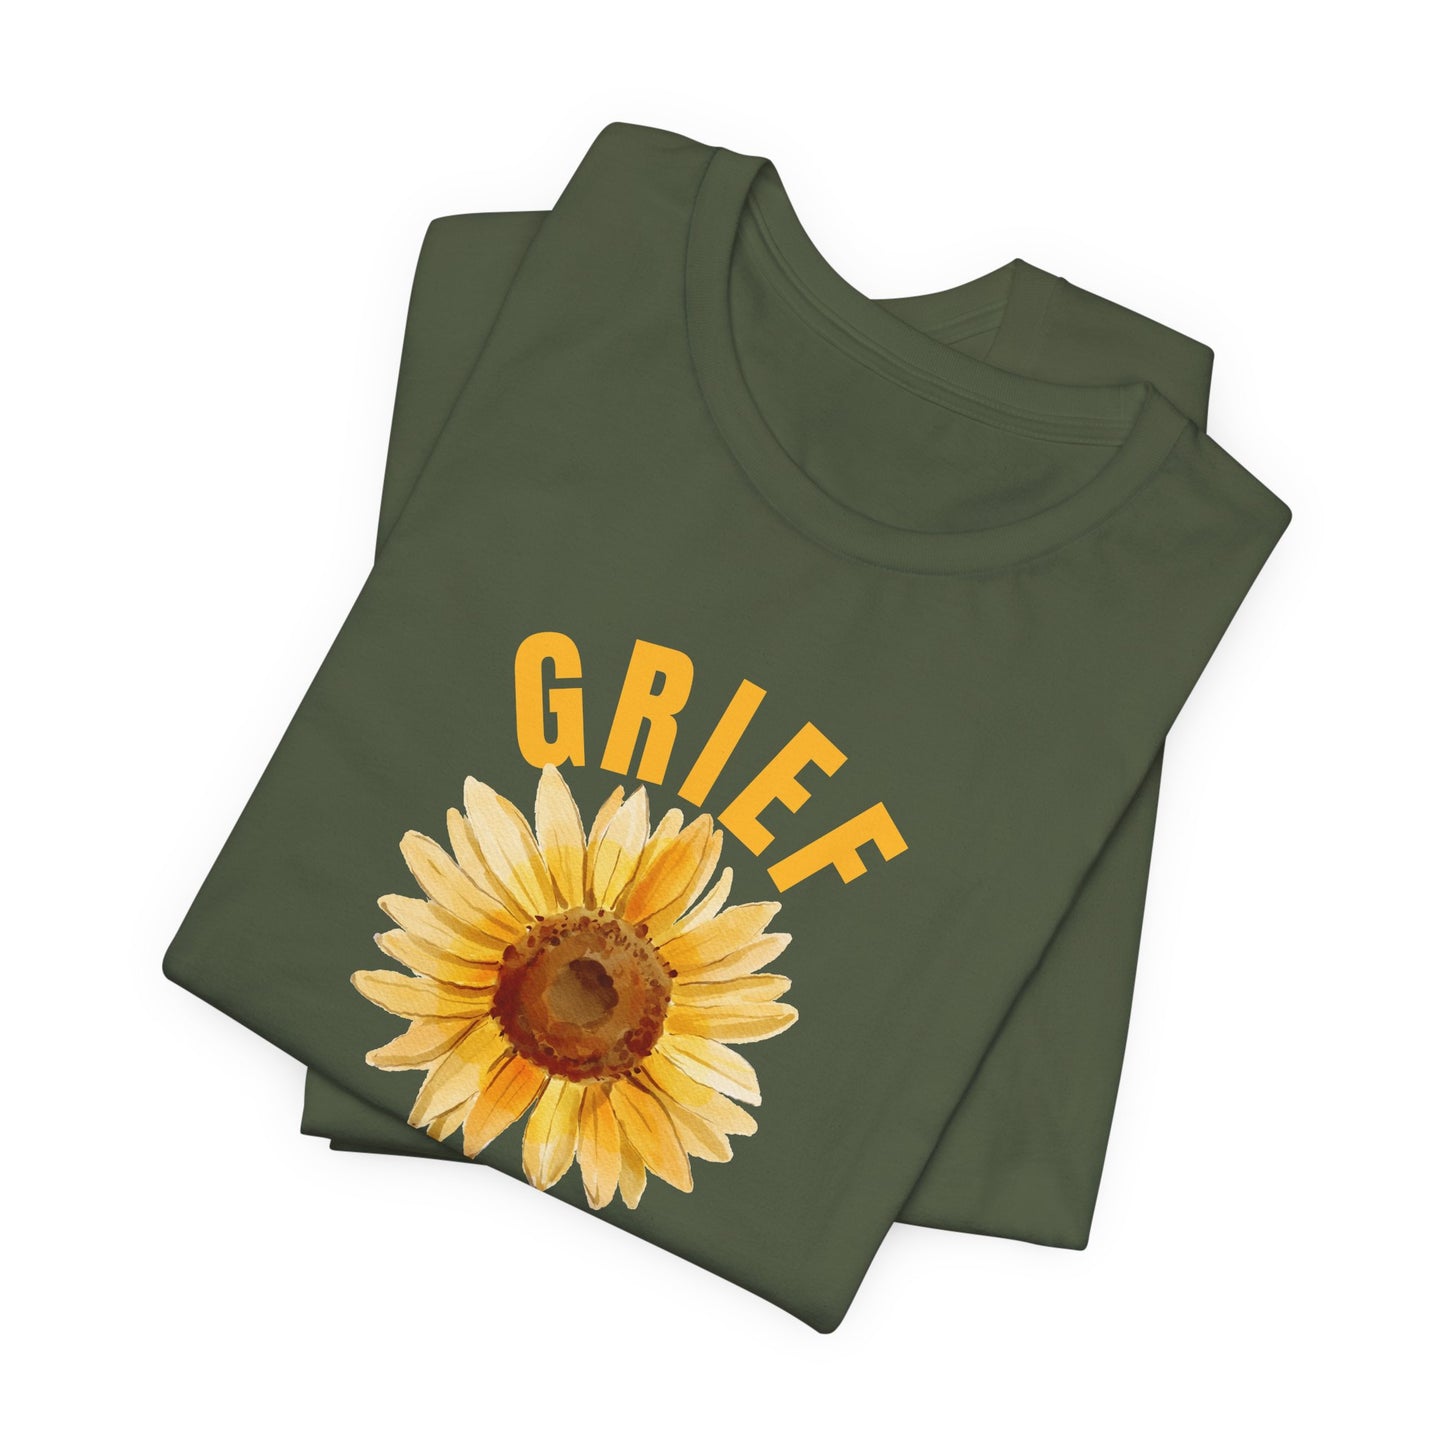 Grief Survivor With Sunflower Bella Canvas 3001 Unisex Tee